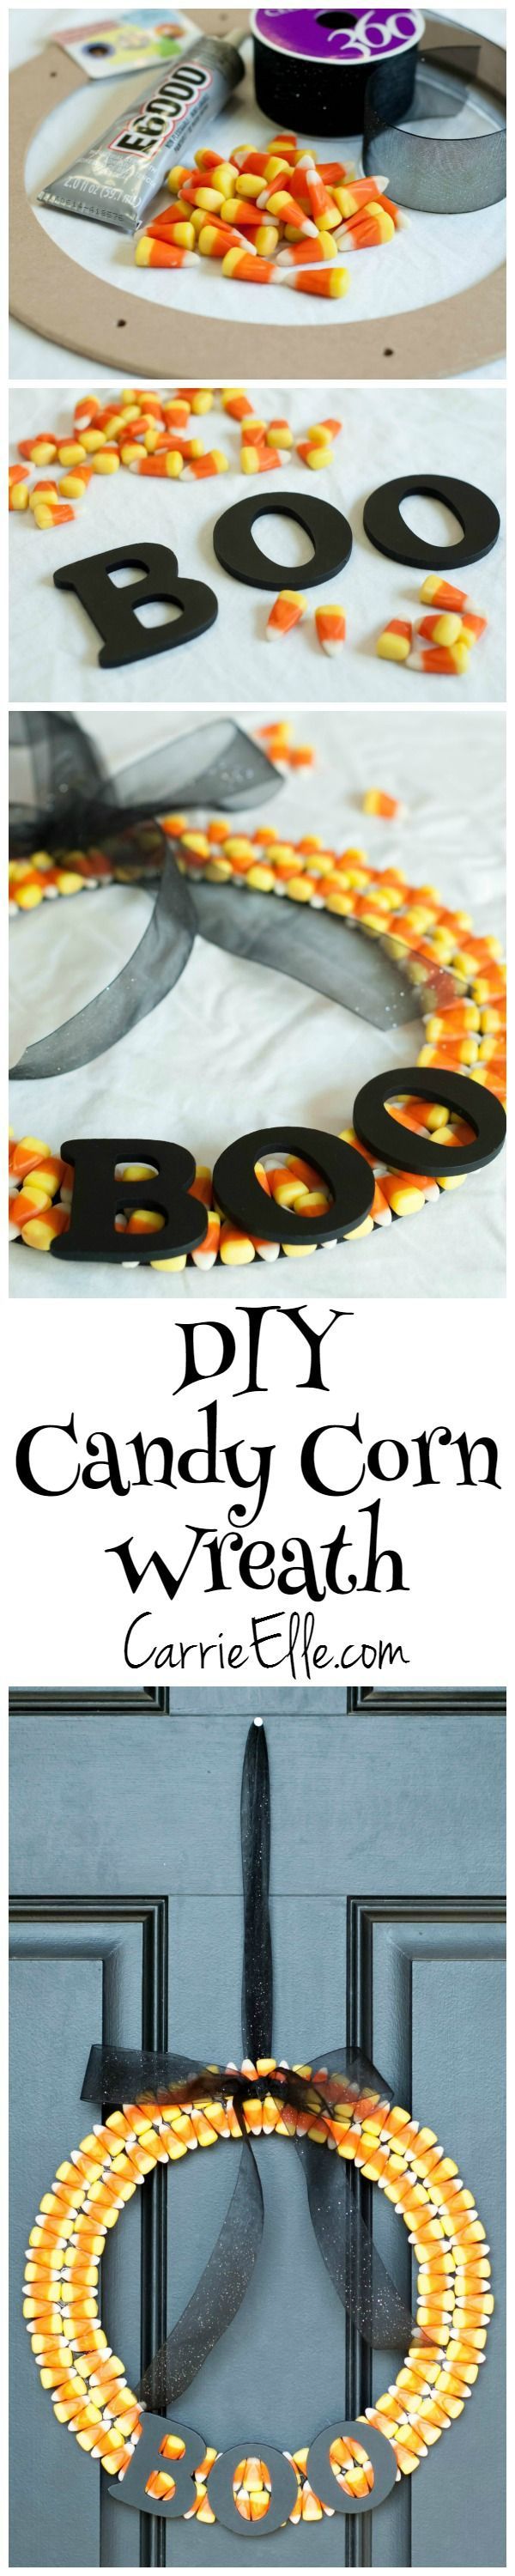 DIY Candy Corn Wreath